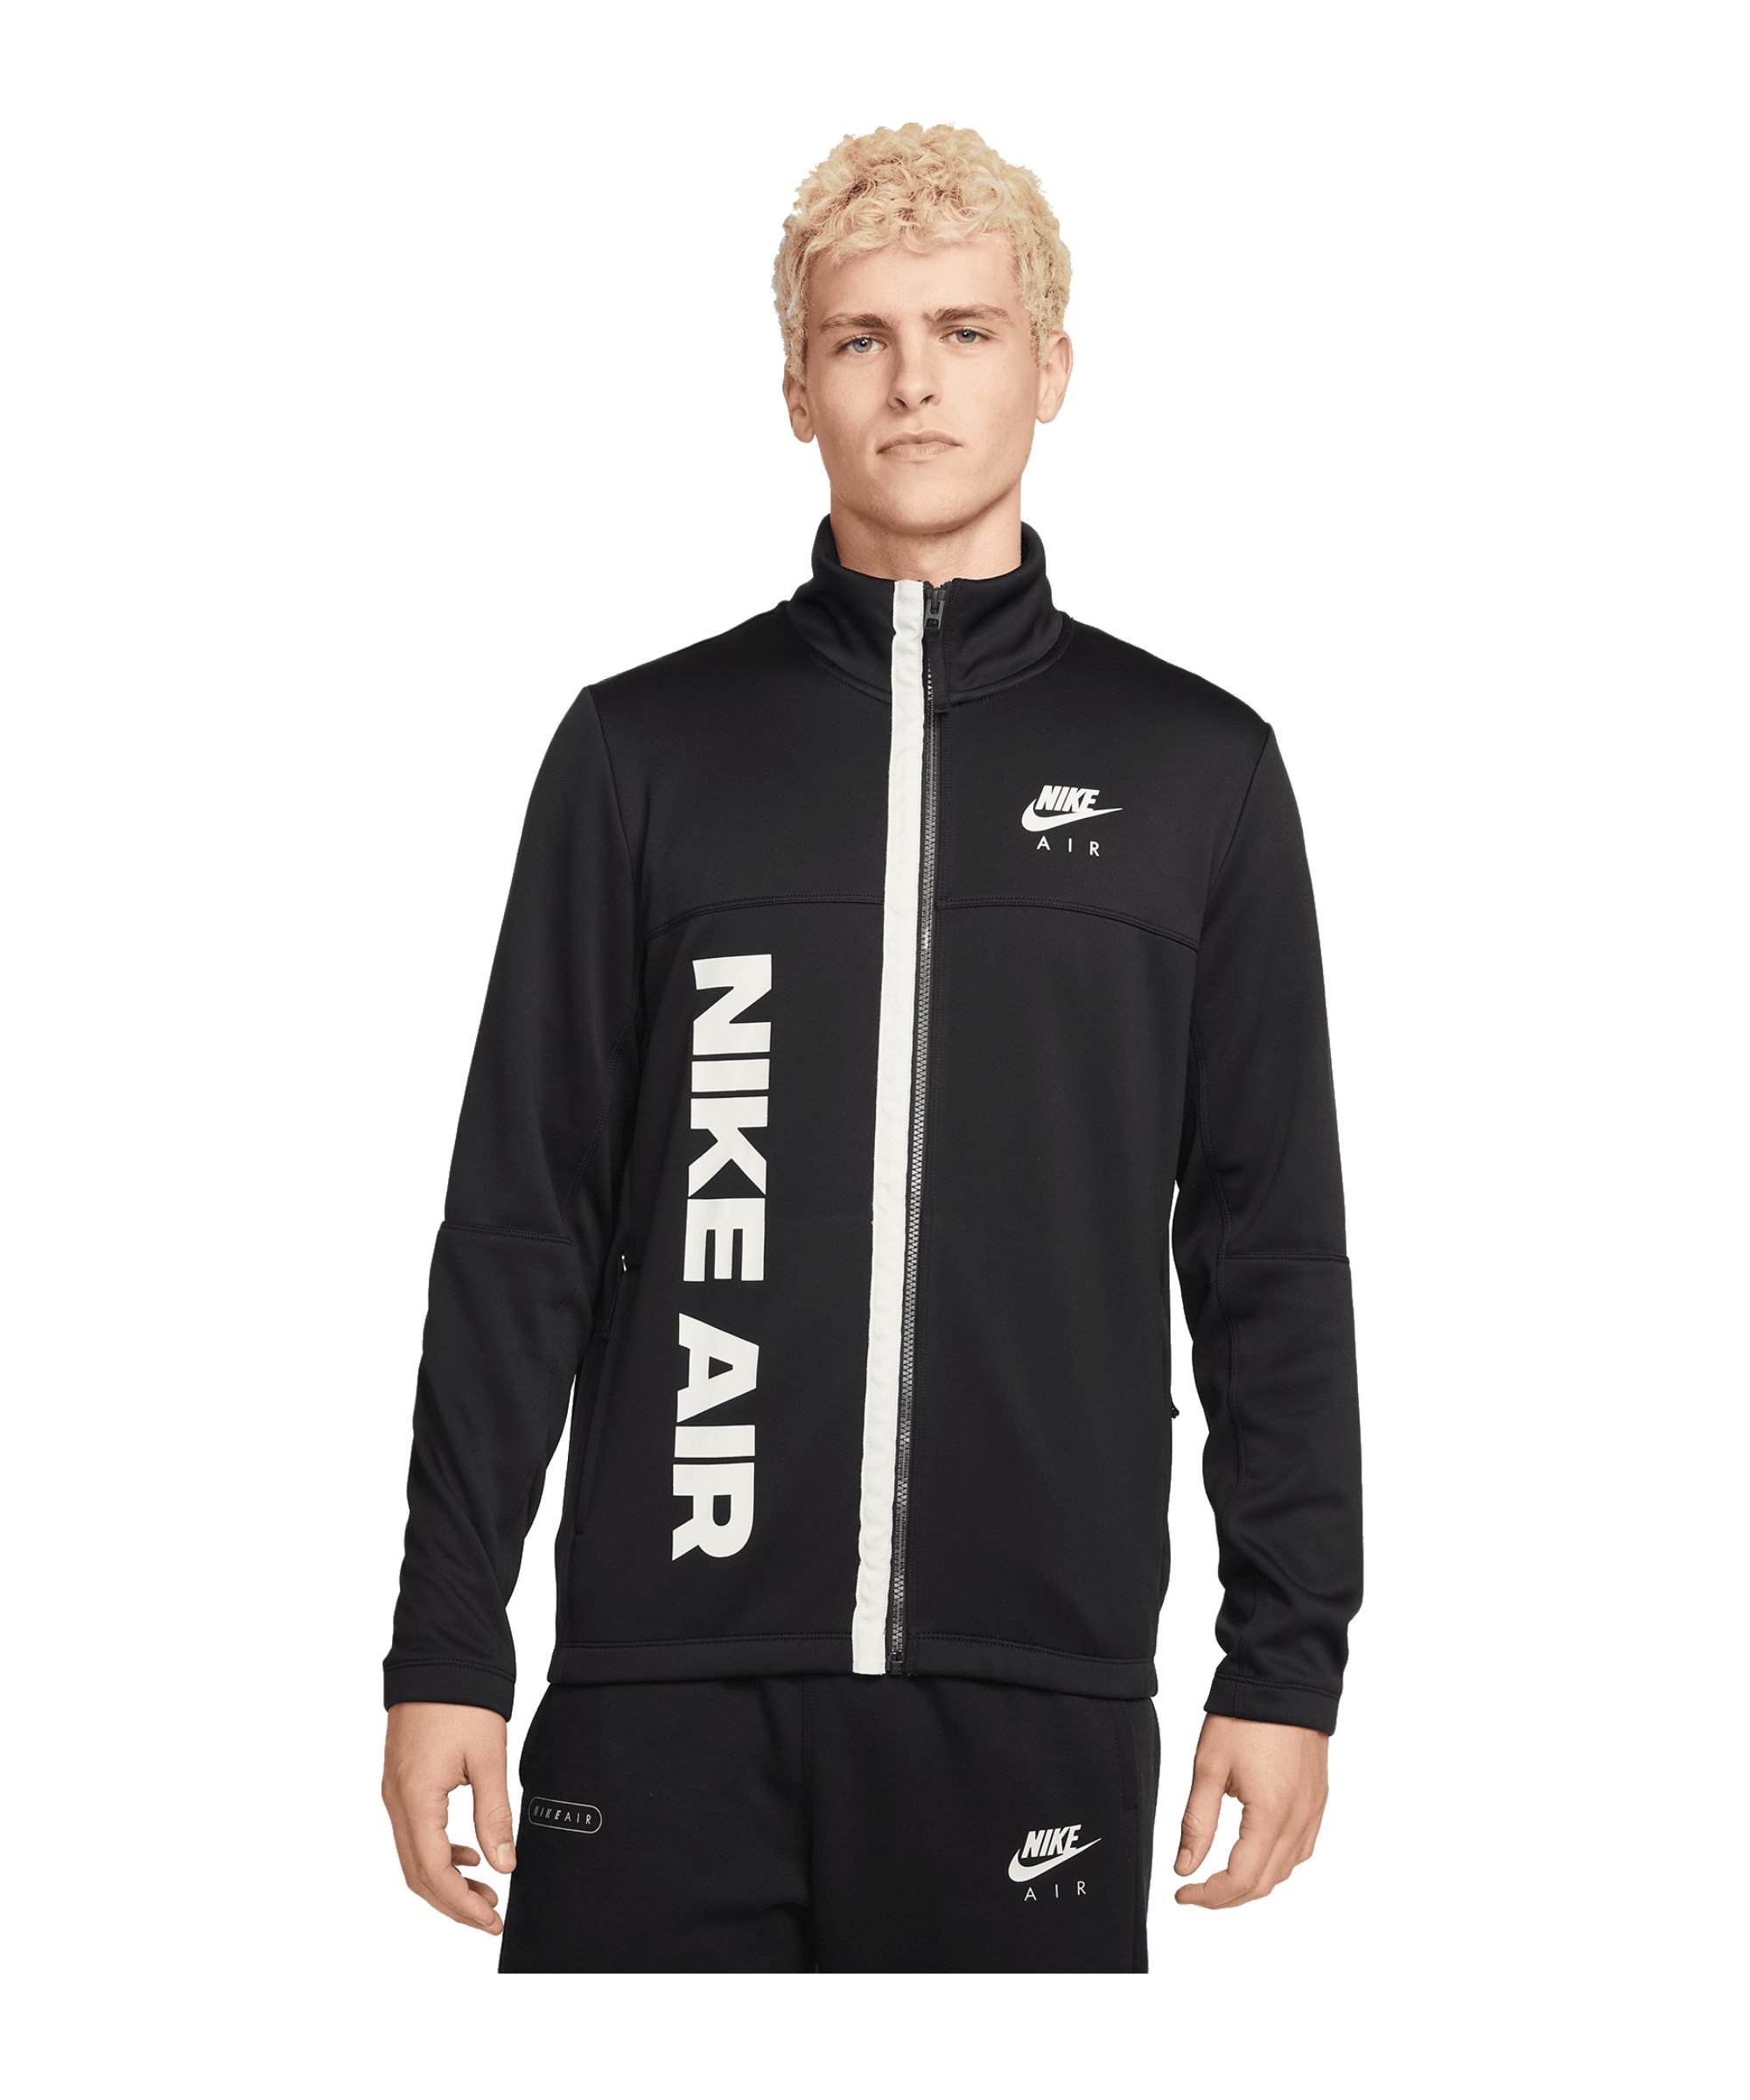 Nike Air Jacke Schwarz F010 - schwarz